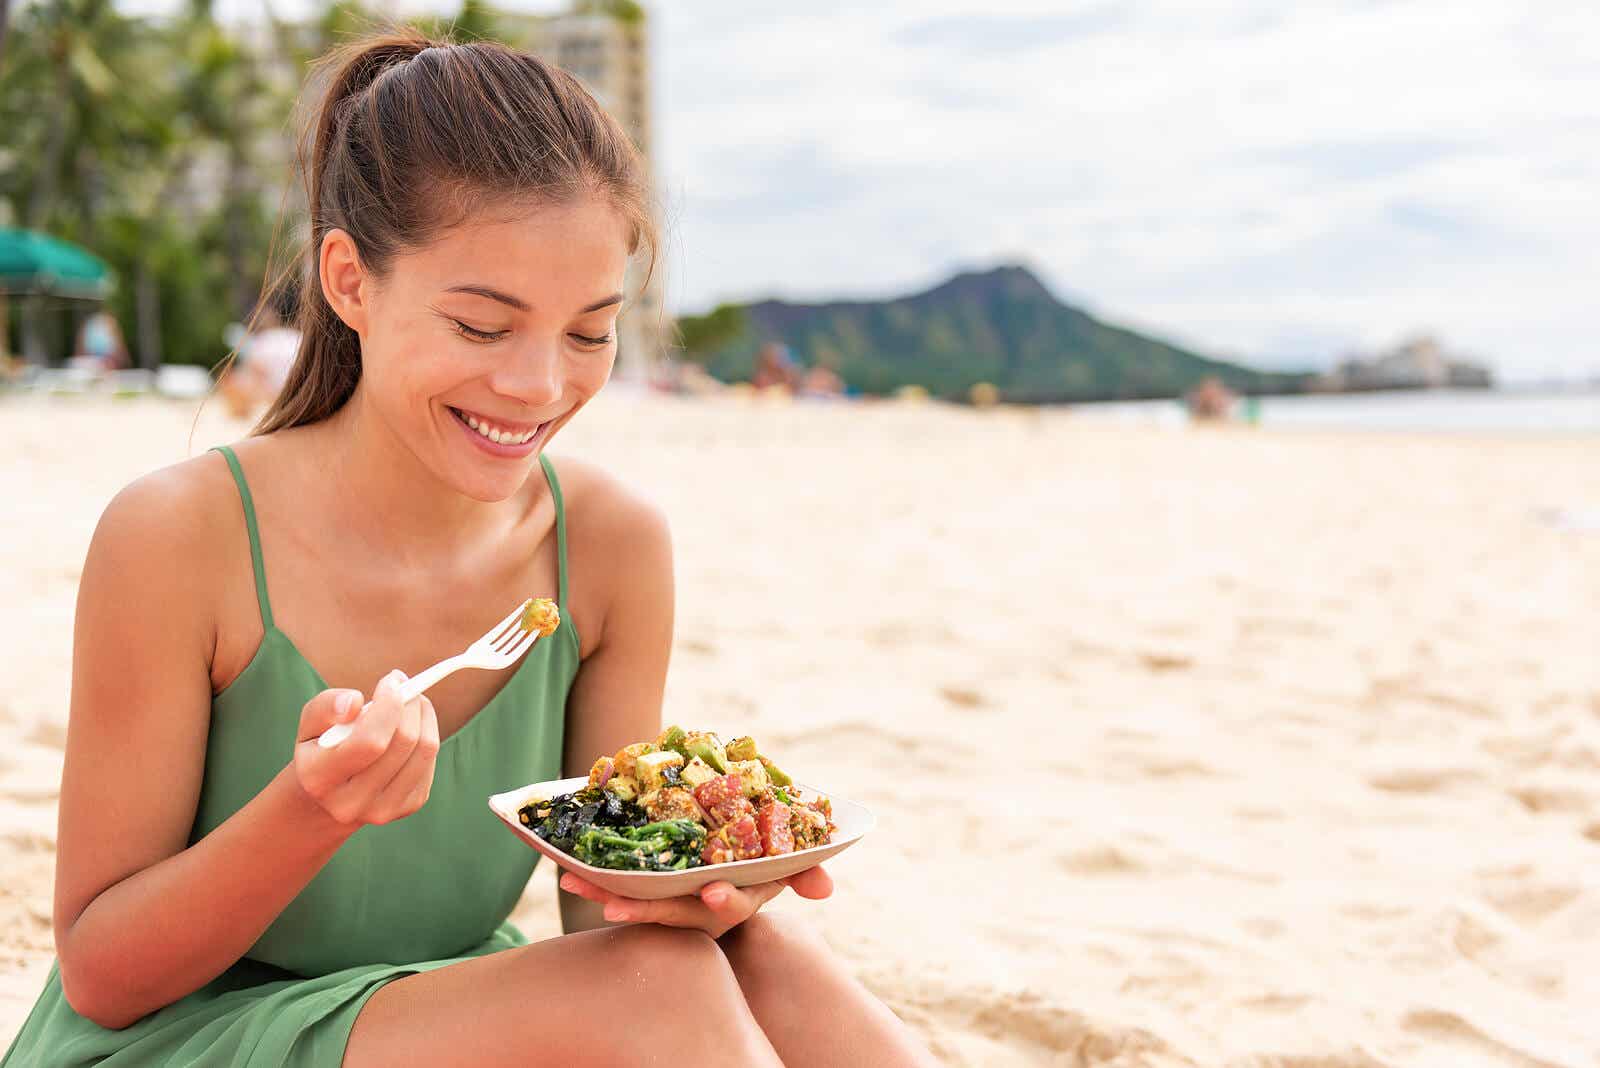 Vrouw die op het strand gezond voedsel eet dat thuis wordt bereid om voedselvergiftiging te voorkomen.